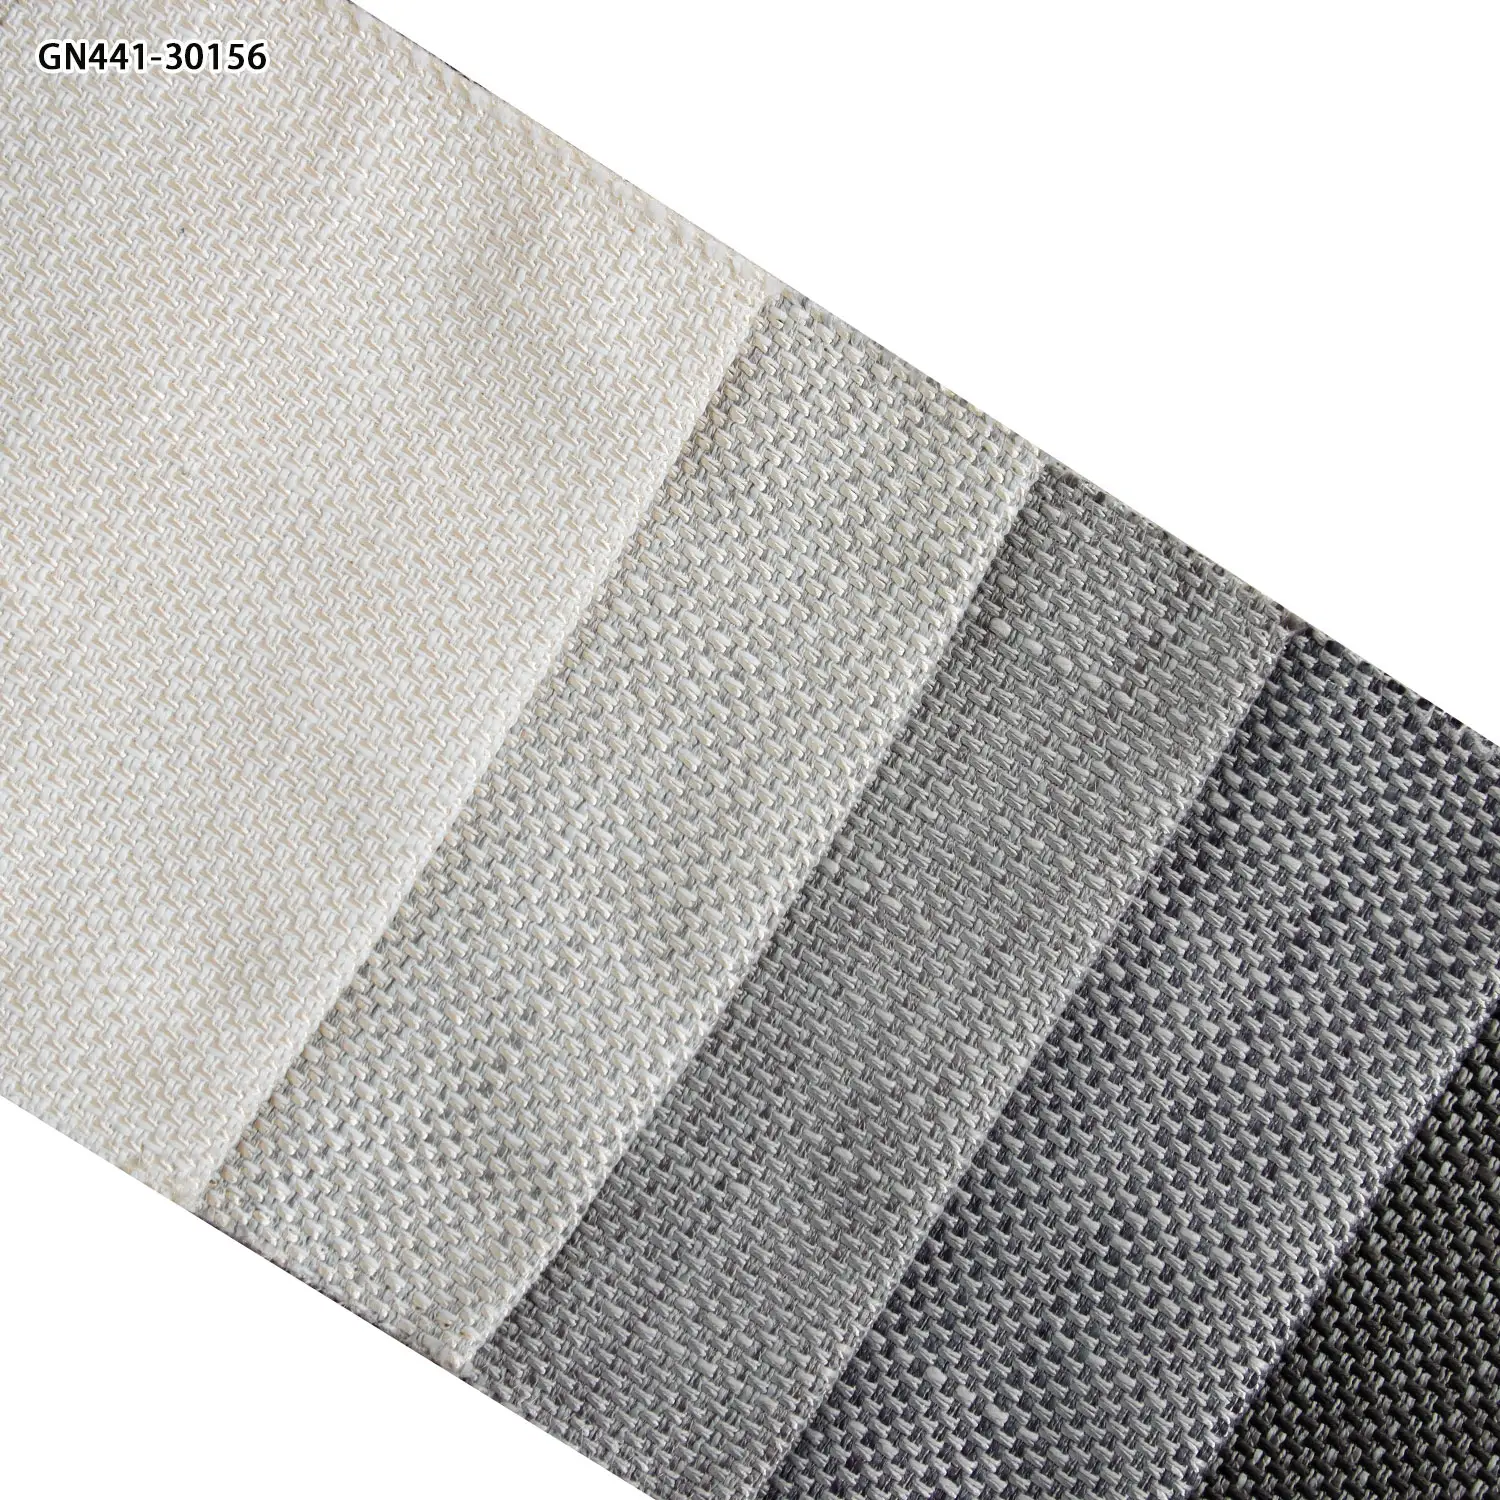 Kanepe kumaş kanepe tekstil kumaşı  imalat hizmetleri döşemelik koltuk kumaşı hindistan